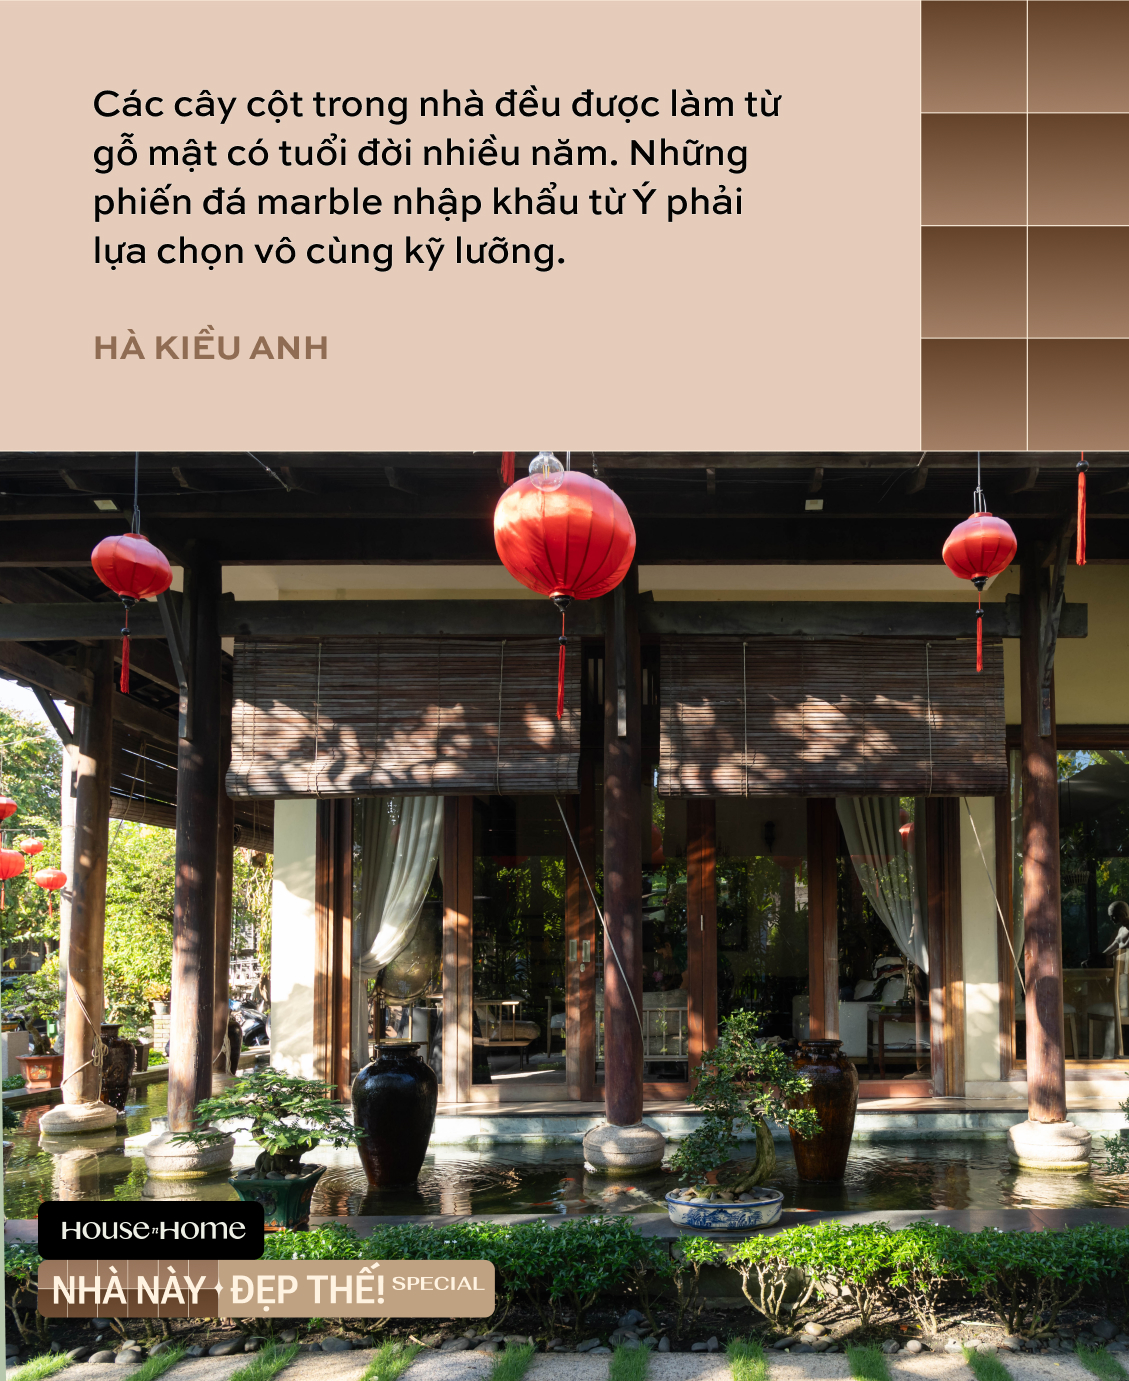 Biệt thự nhà vườn gần 20 năm tuổi của HH Hà Kiều Anh: Phong vị Á Đông cổ kính, khẳng định không bao giờ bán - Ảnh 10.